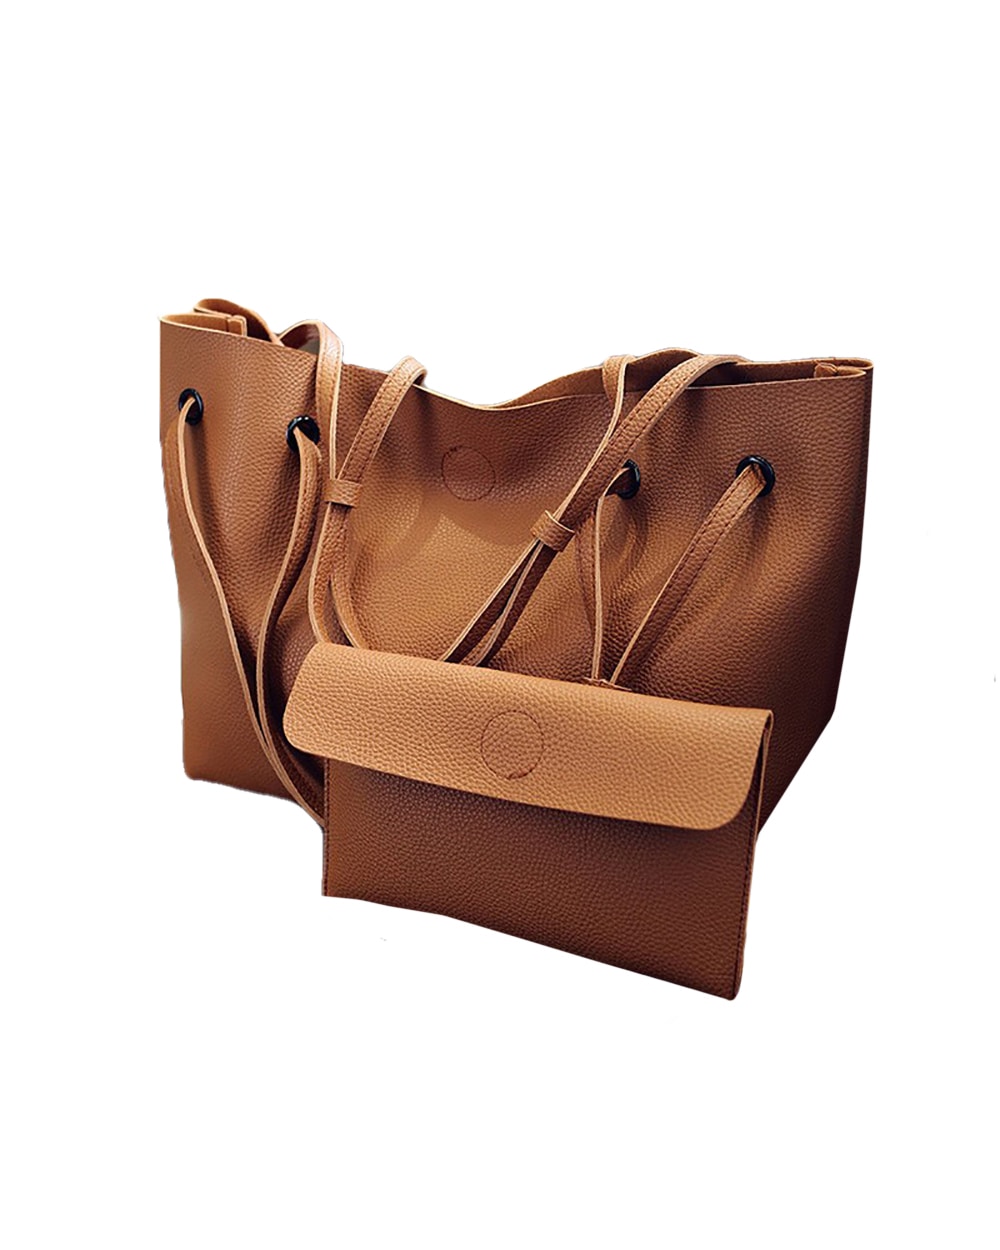 brown large capacity tote bag - 4